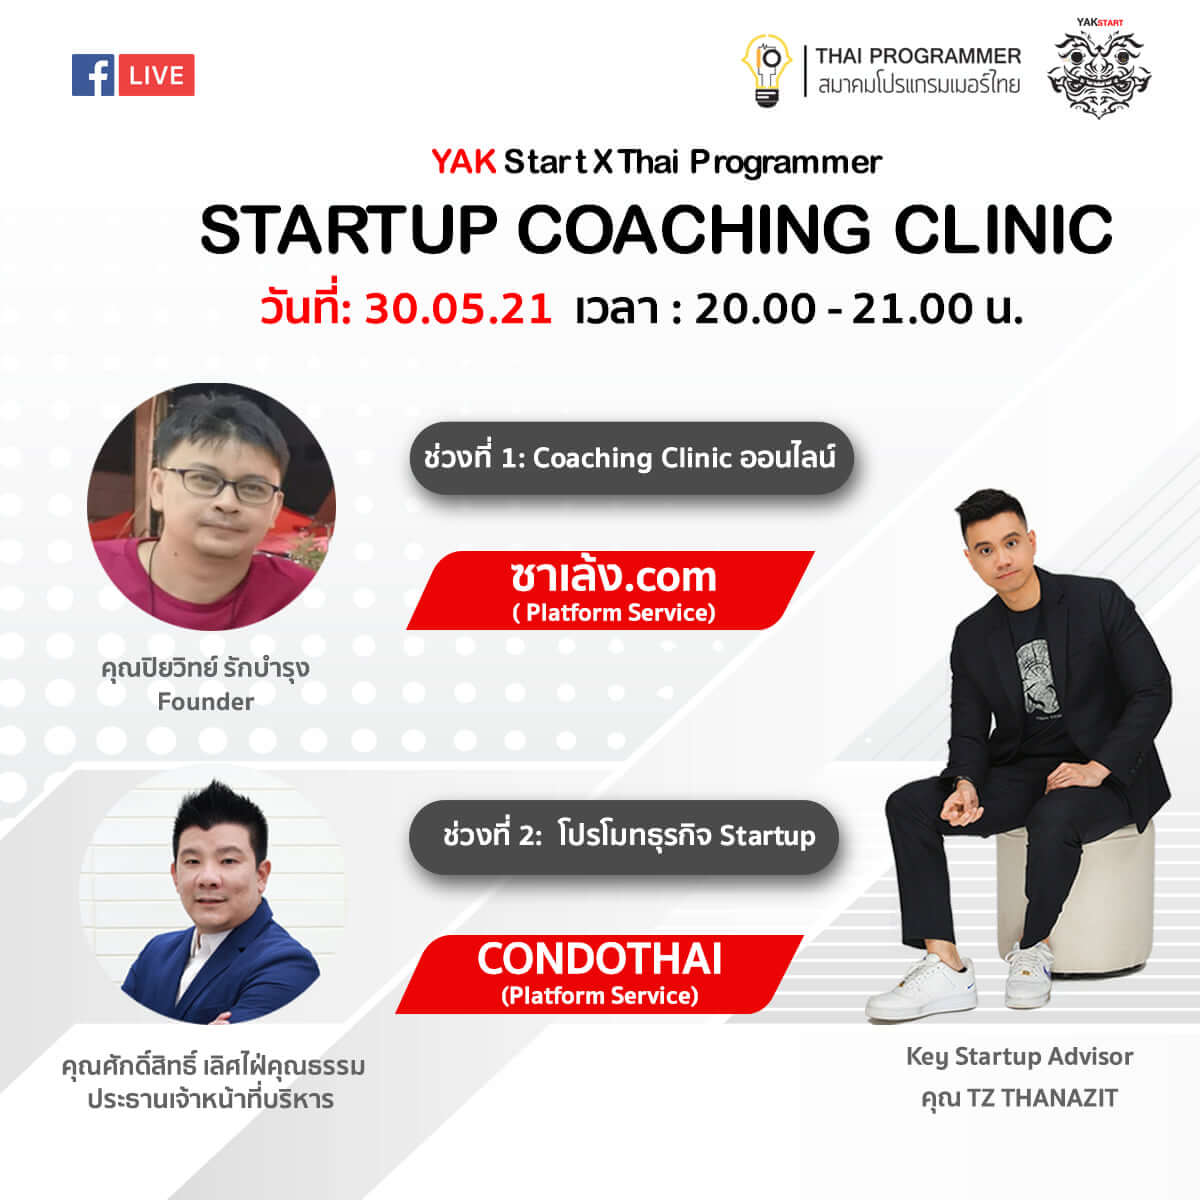 เตรียมพบกับ Startup Coaching Clinic ออนไลน์ จาก Yak Start X Thai Programmer ที่มาพร้อมกับสตาร์ทอัพที่น่าสนใจและมาแรงในเวลานี้